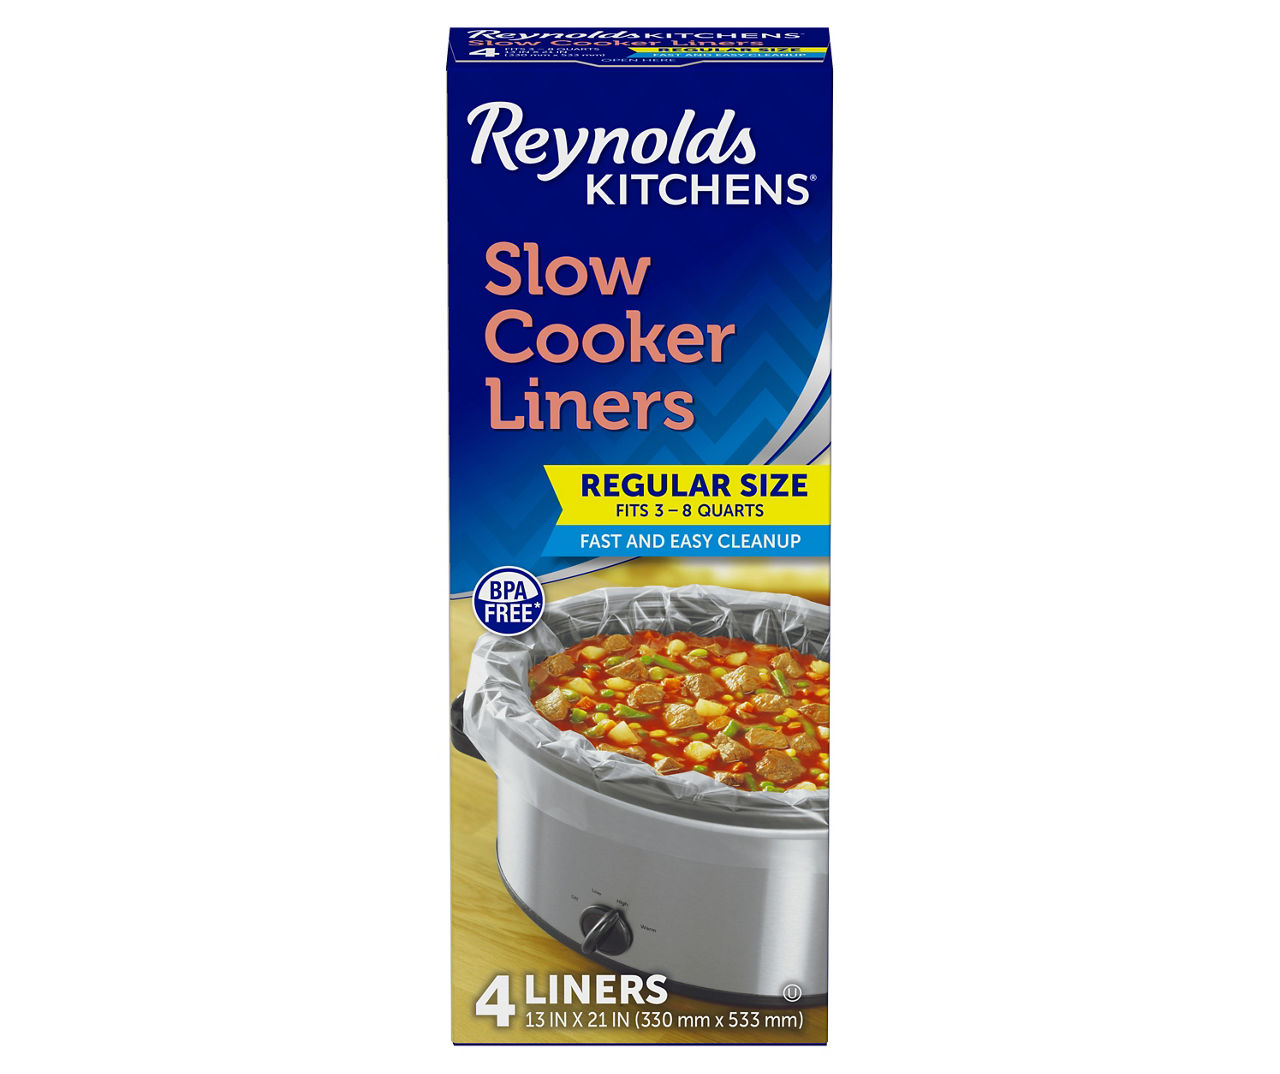 Reynolds Reynolds Kitchens Regular Size Slow Cooker Liners 4 ct Box